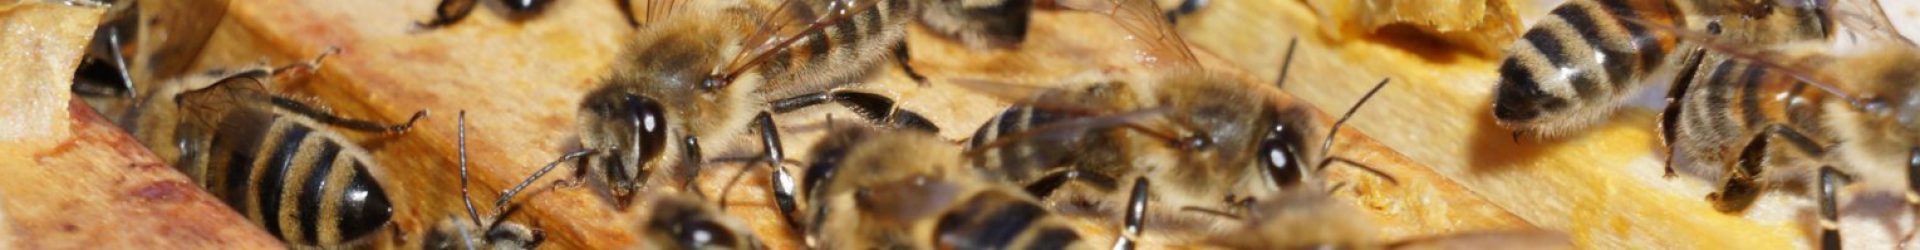 Aktualisiert: Hoffnung für alle Imker – Veitshöchheimer Bienenexperten finden Mittel gegen Varroa-Milben